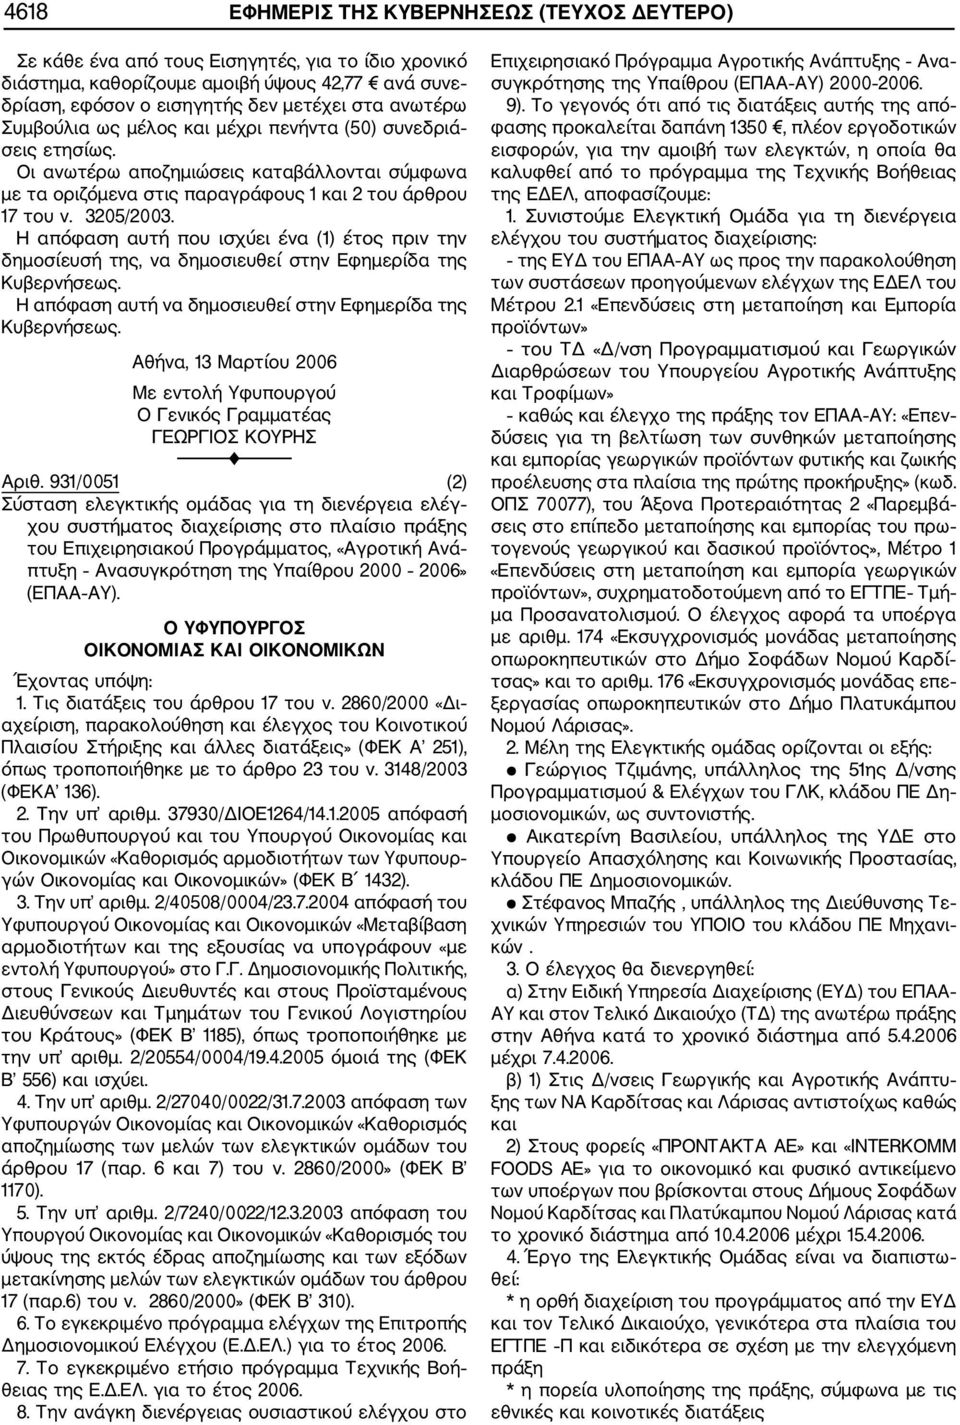 Η απόφαση αυτή που ισχύει ένα (1) έτος πριν την δημοσίευσή της, να δημοσιευθεί στην Εφημερίδα της Αθήνα, 13 Μαρτίου 2006 Με εντολή Υφυπουργού Ο Γενικός Γραμματέας ΓΕΩΡΓΙΟΣ ΚΟΥΡΗΣ Αριθ.